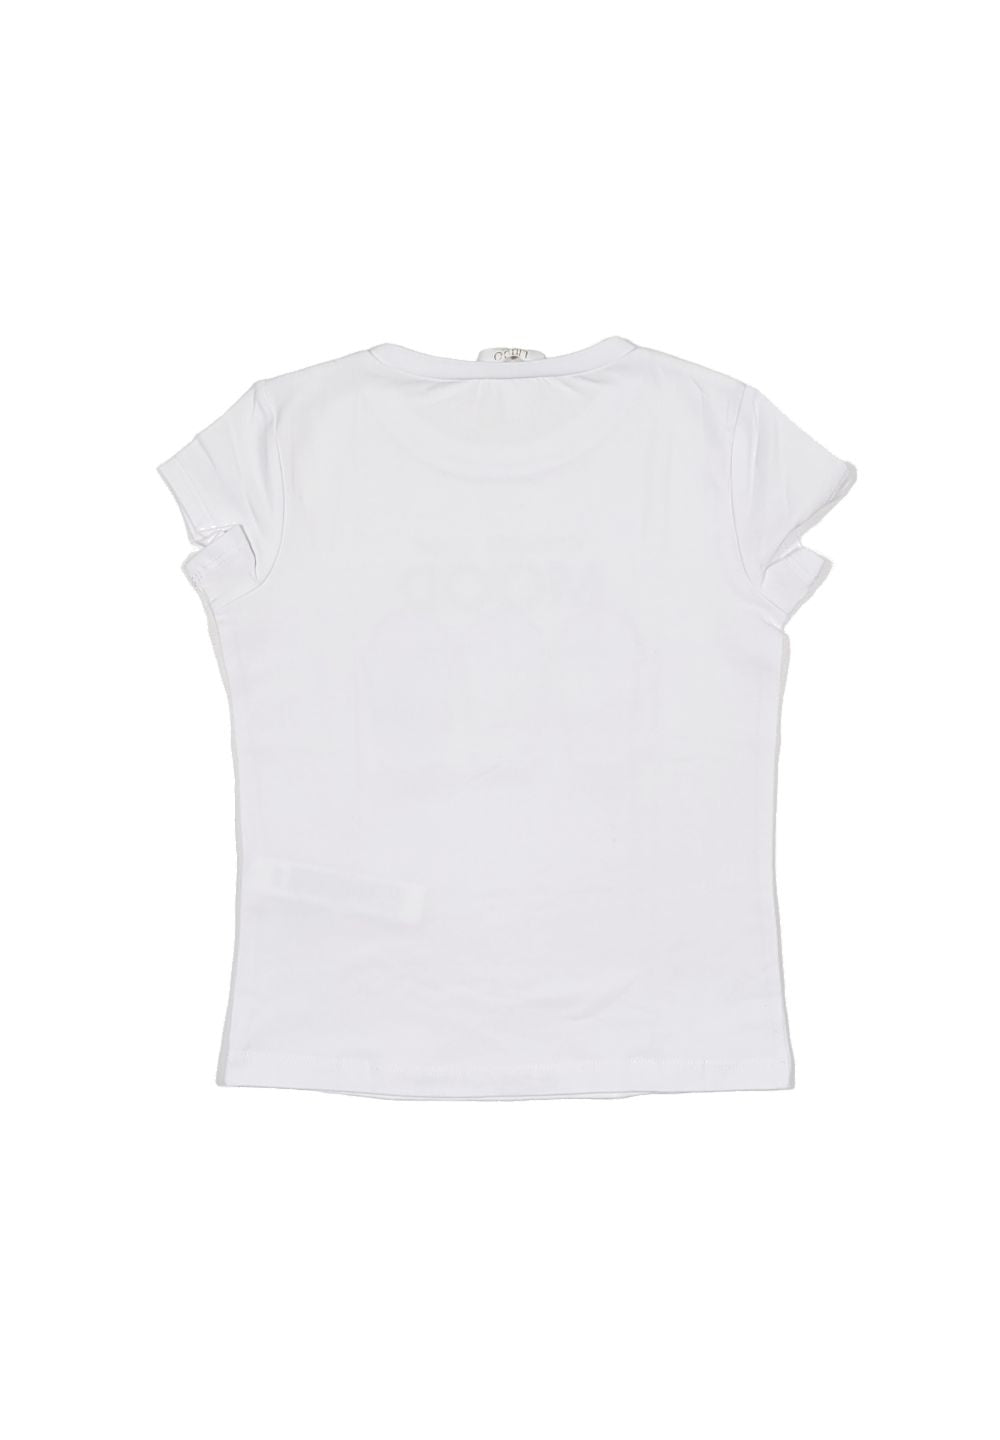 T-shirt bianca per neonata